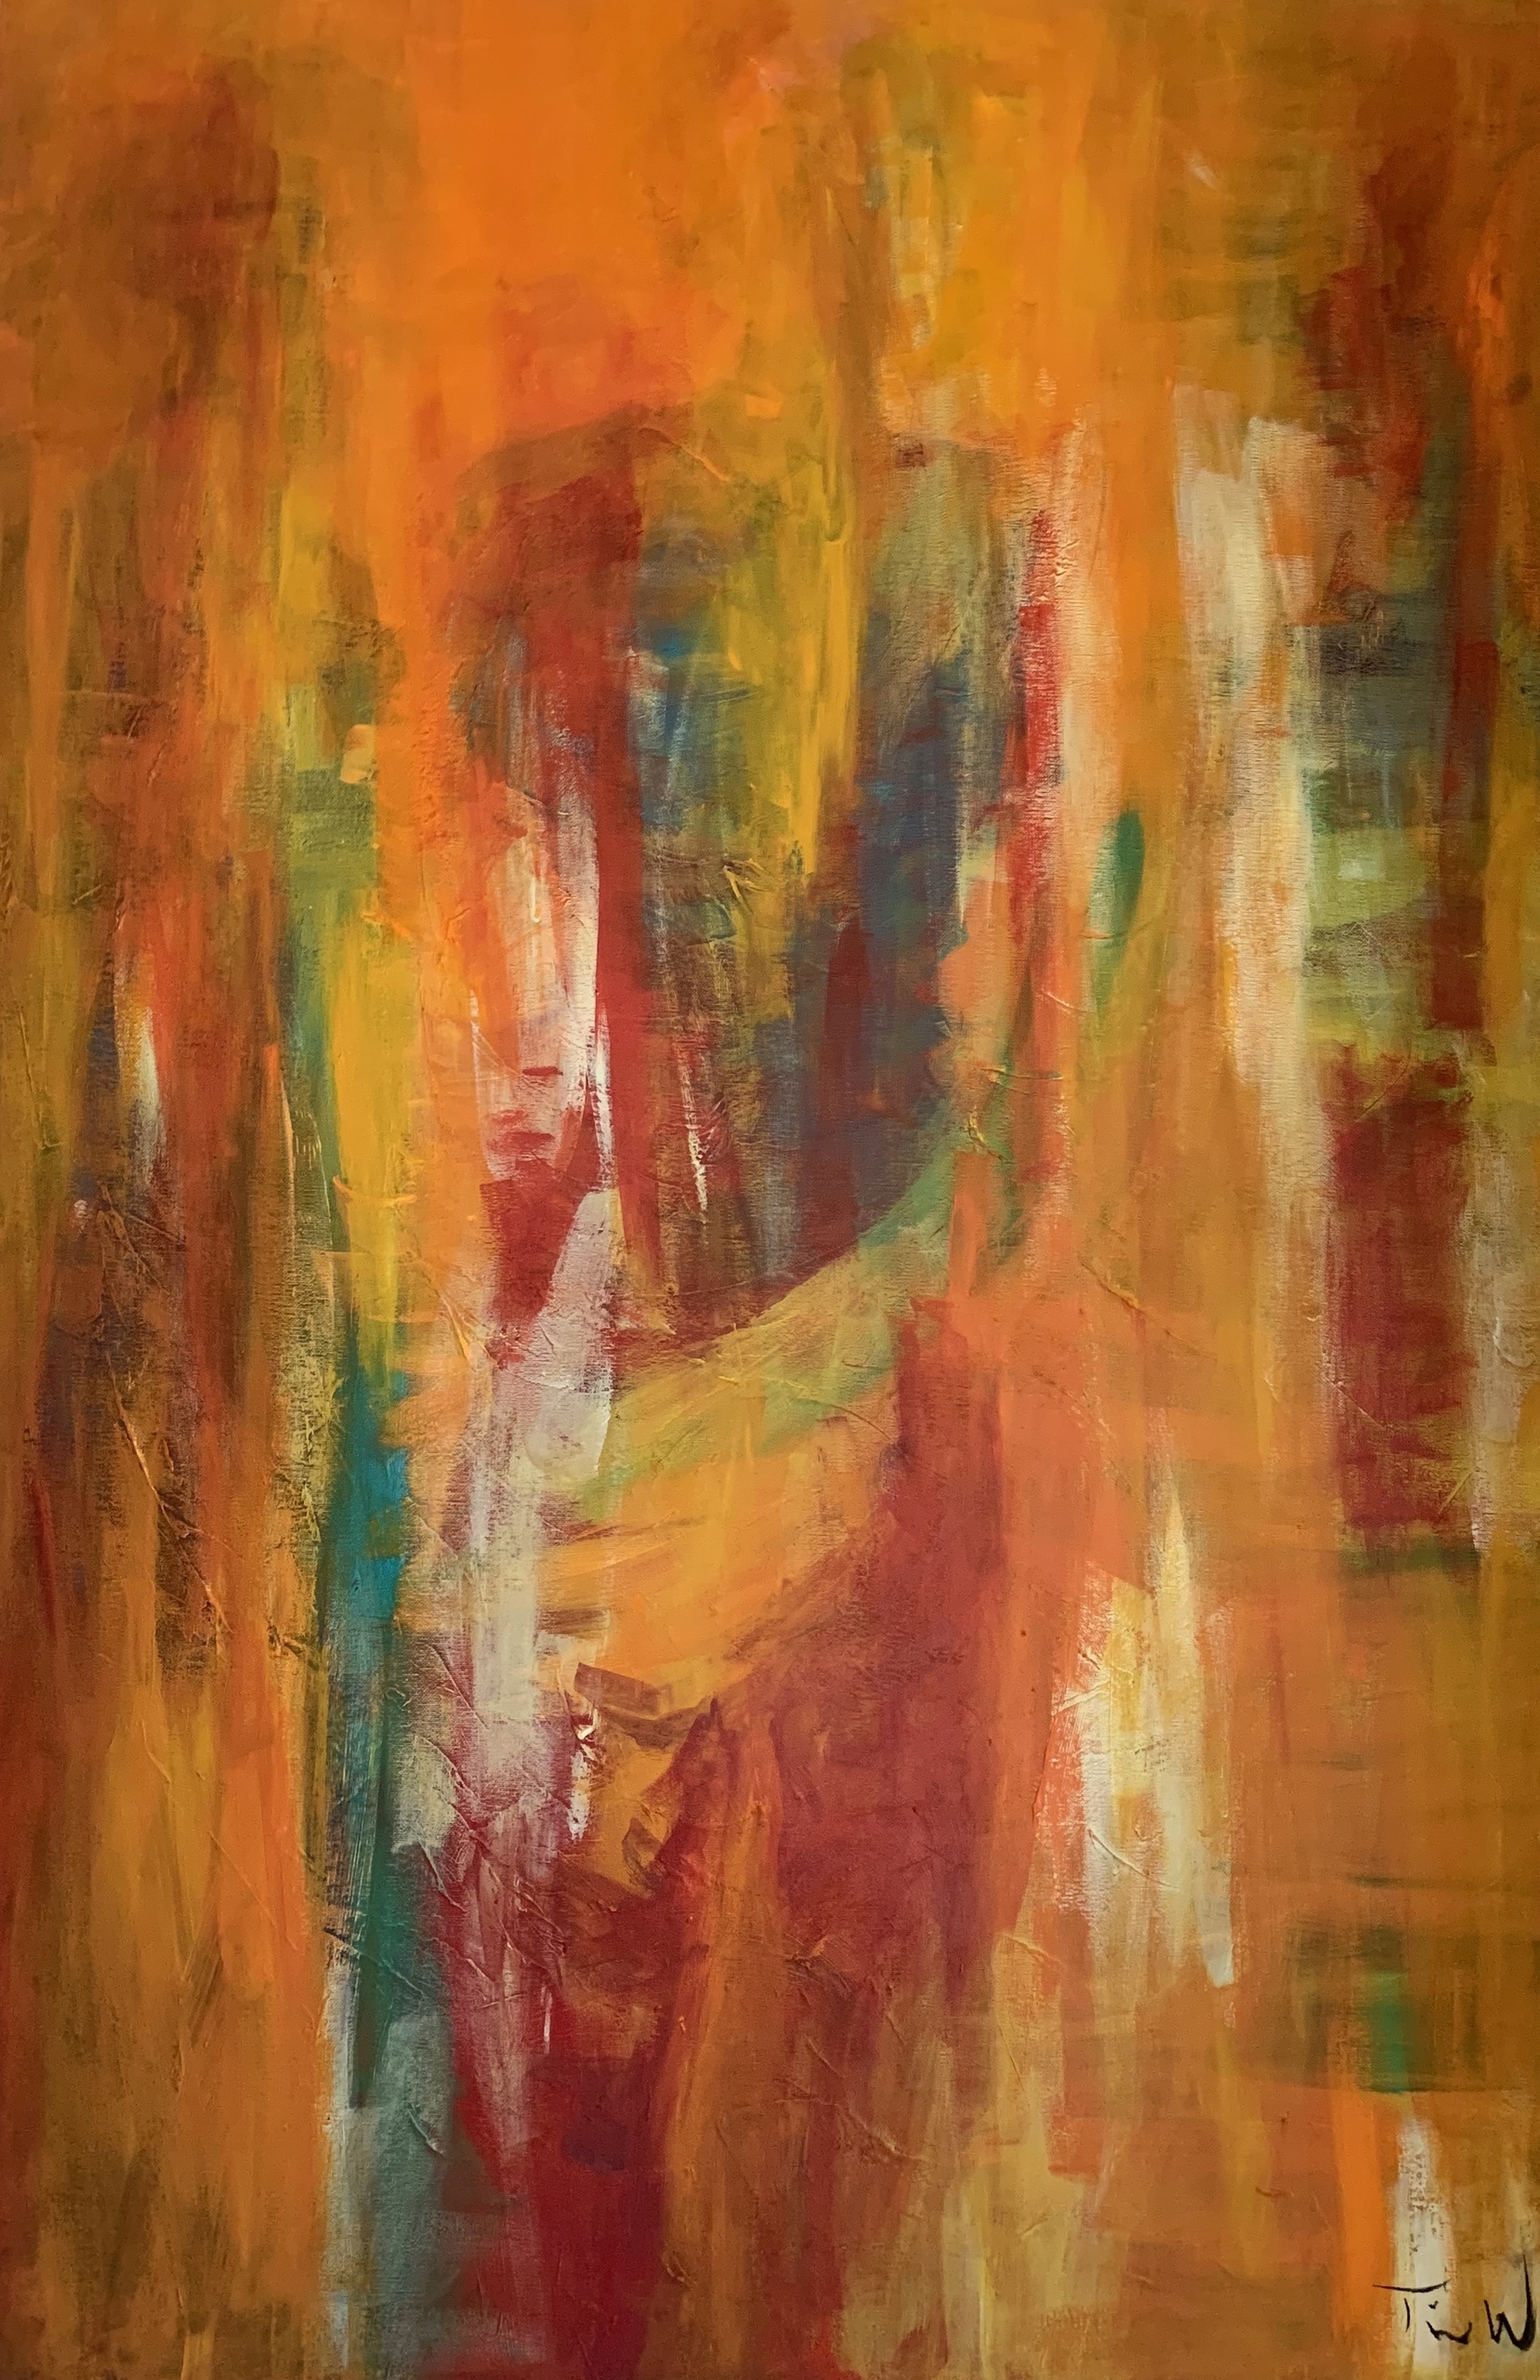 Abstrakt maleri, hvor man i det diffuse lys aner personer. Det er et spændende og harmonisk maleri med et blødt og stemningsfuldt udtryk.